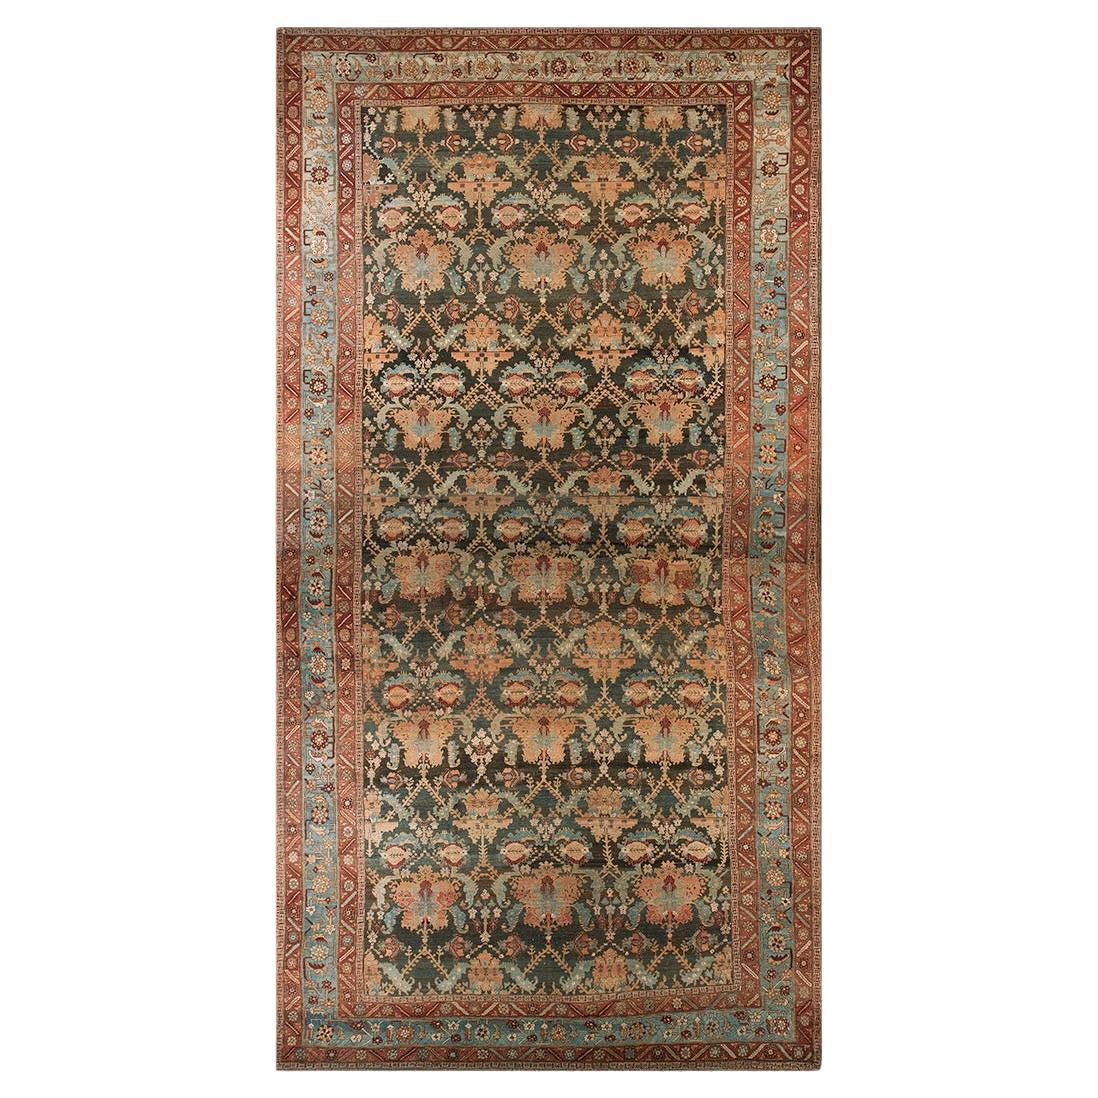 Late 19th Century Persian Bakhtiari Carpet ( 13'10" x 26'6" - 422 x 808 )